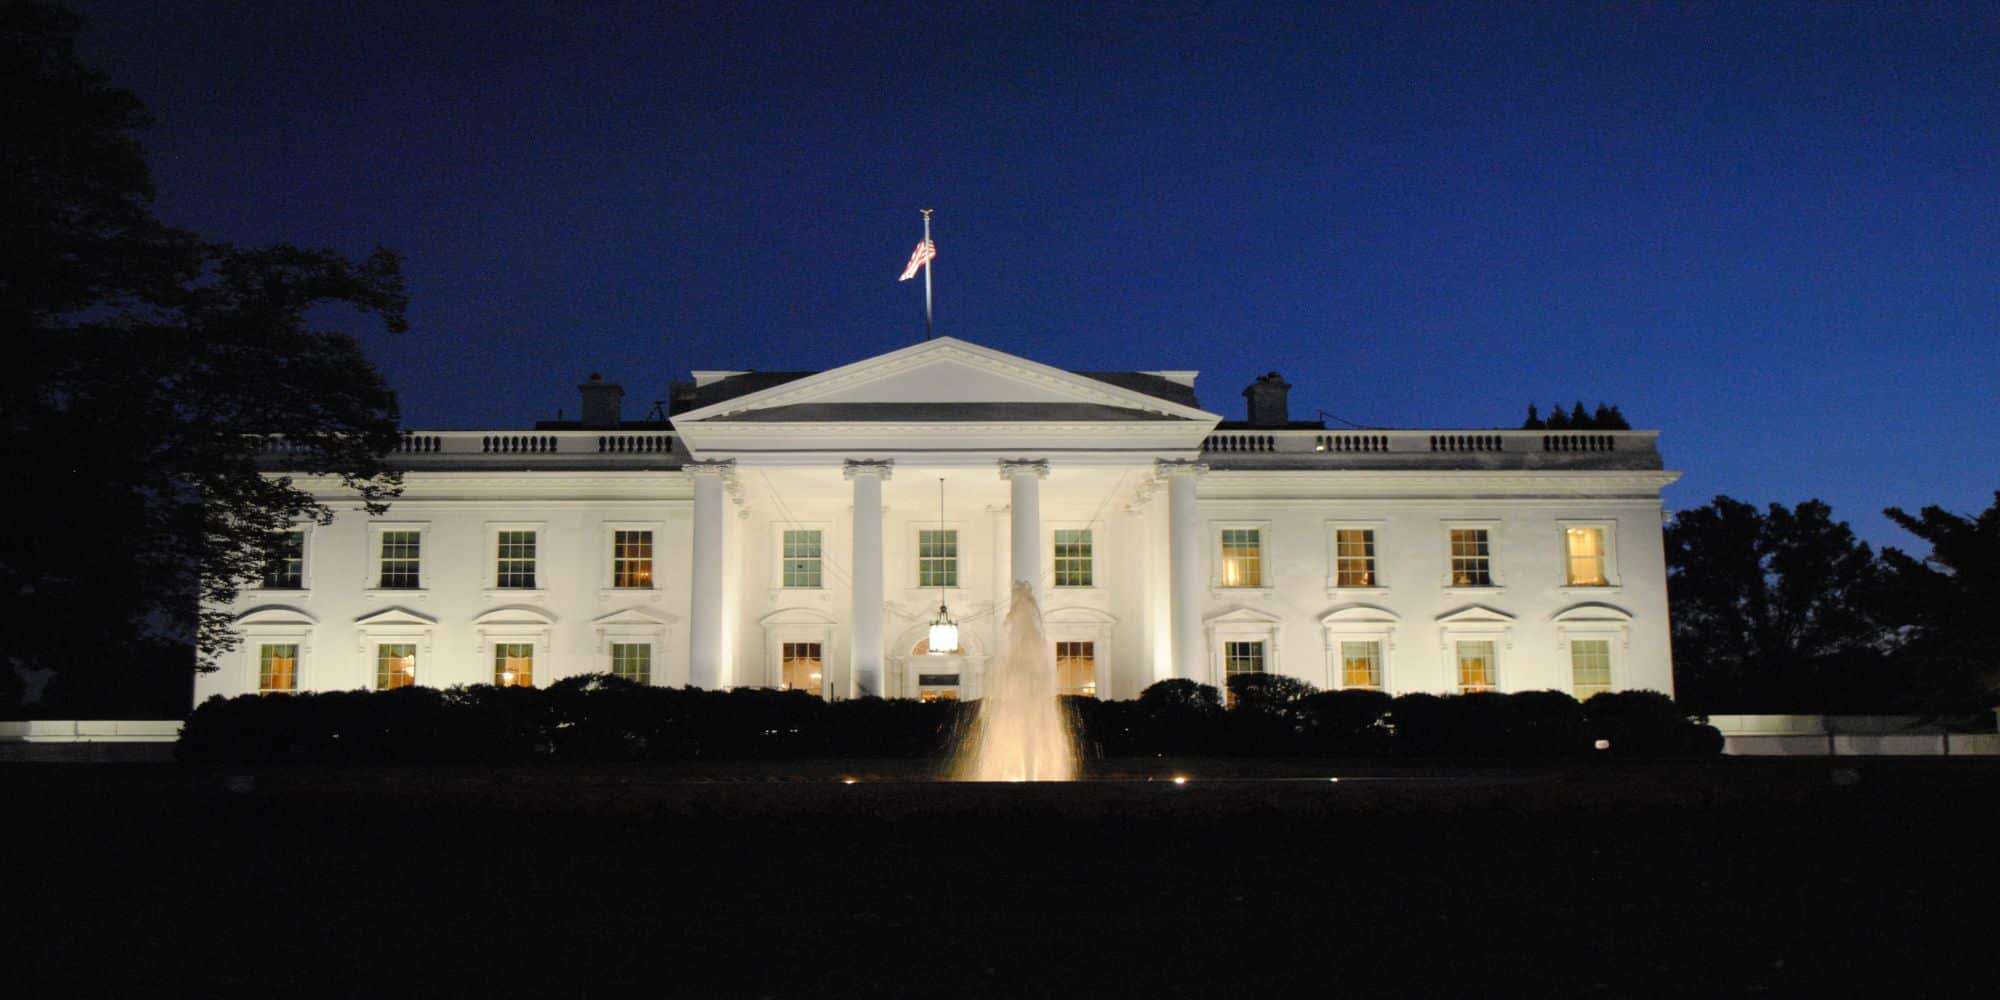 Ο Λευκός Οίκος φωτισμένος το βράδυ στις ΗΠΑ